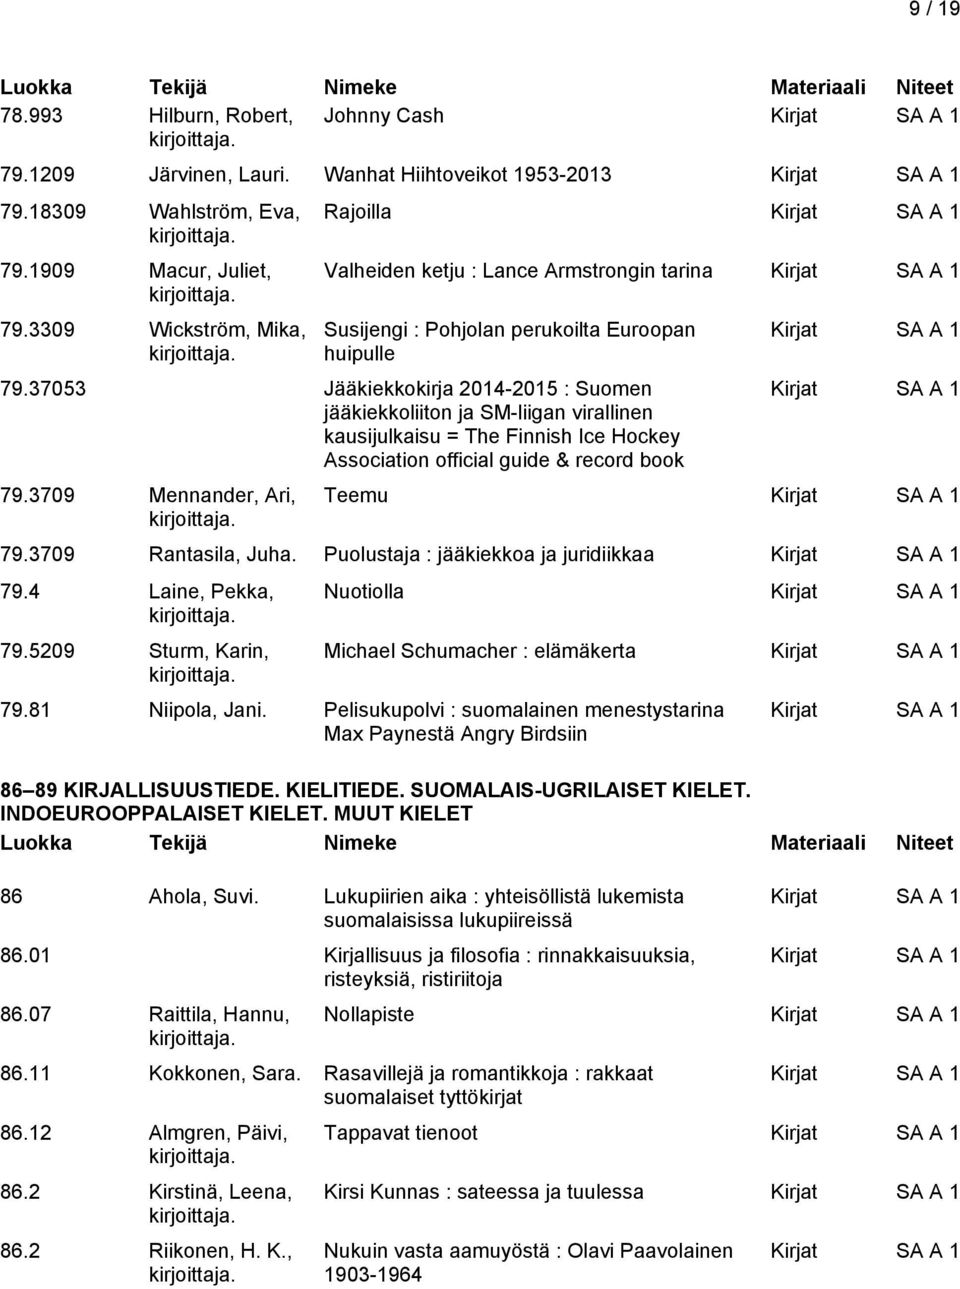 37053 Jääkiekkokirja 2014-2015 : Suomen jääkiekkoliiton ja SM-liigan virallinen kausijulkaisu = The Finnish Ice Hockey Association official guide & record book 79.3709 Mennander, Ari, Teemu 79.